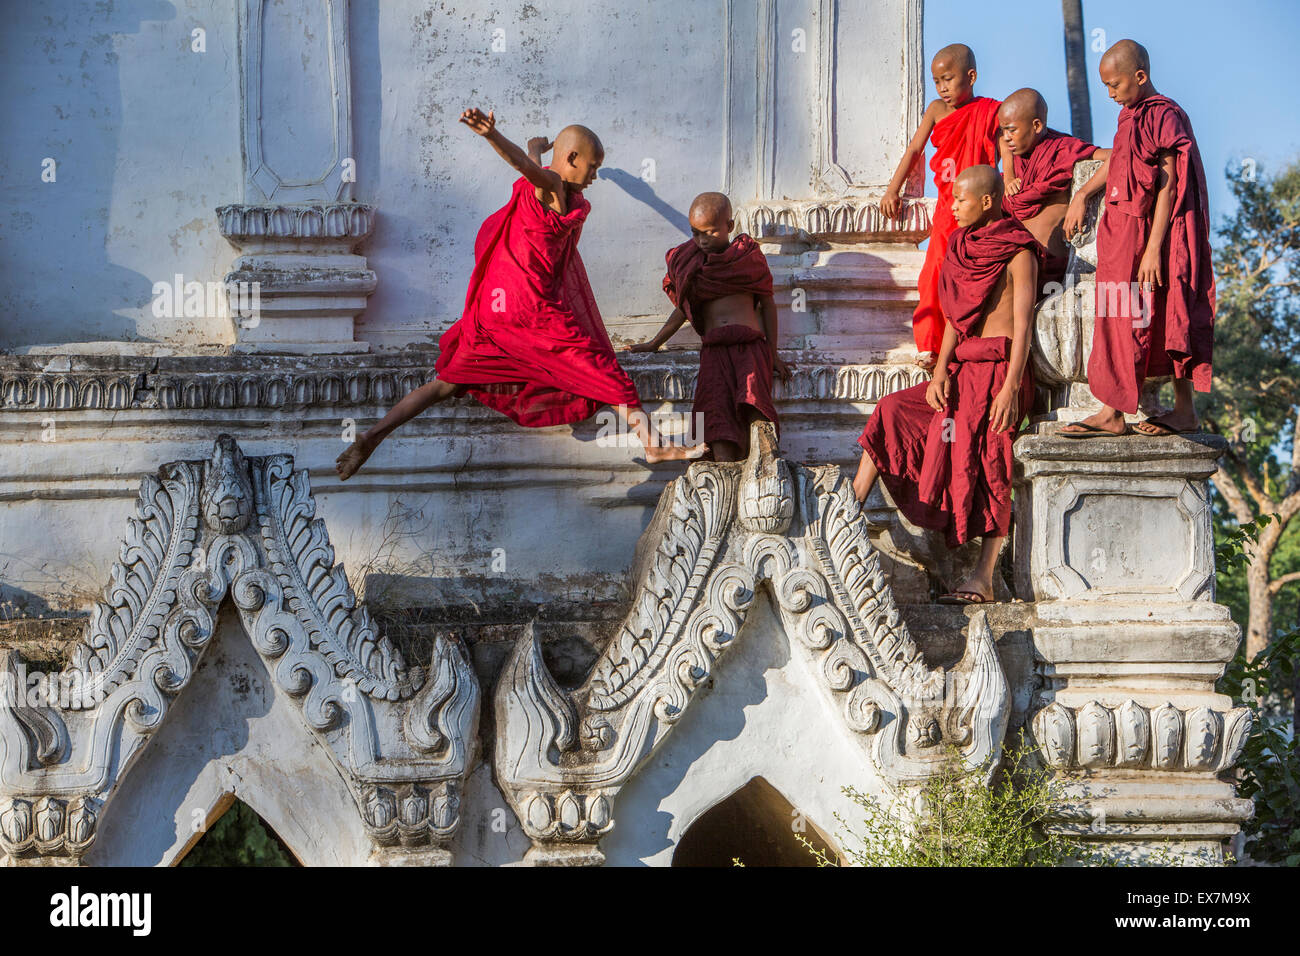 Les moines novices des pics à sauter la chape Salay Soun Kyaung monastère Taw Gyi, Myanmar Banque D'Images